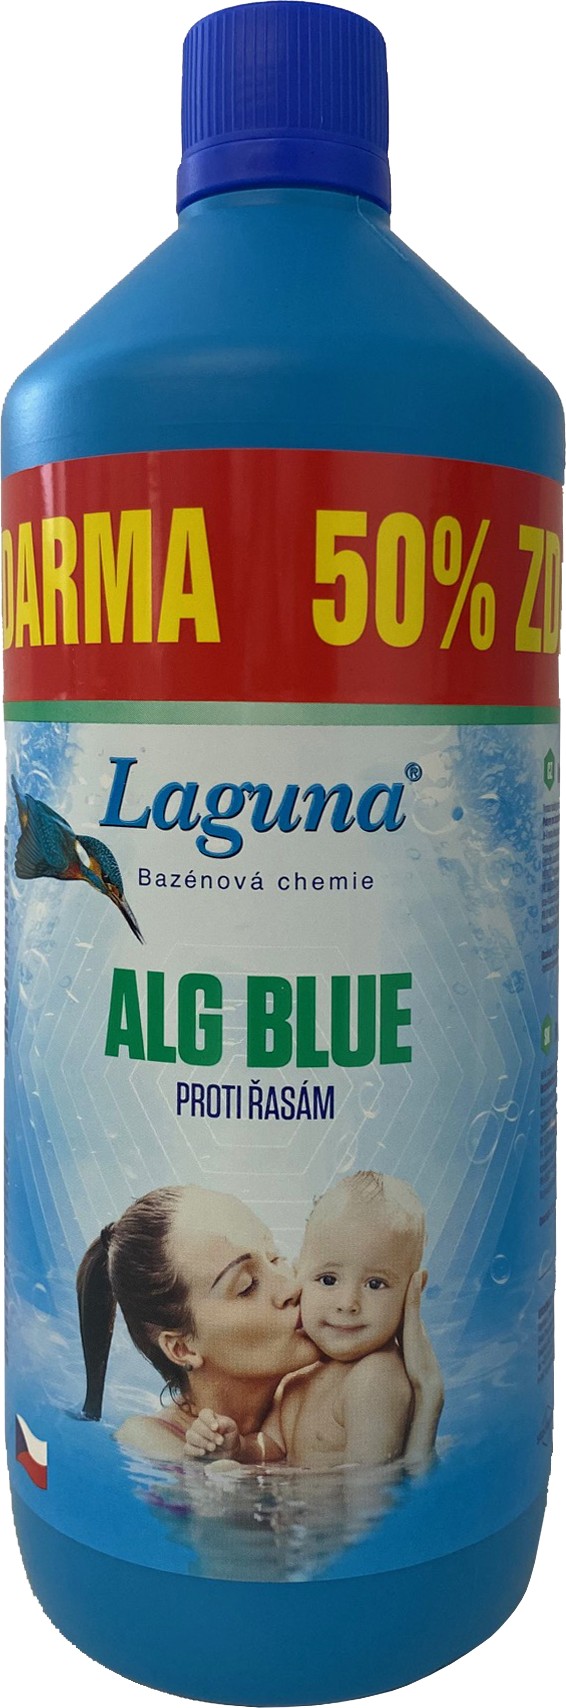 Přípravek proti řasám Laguna ALG Blue + 50 % zdarma